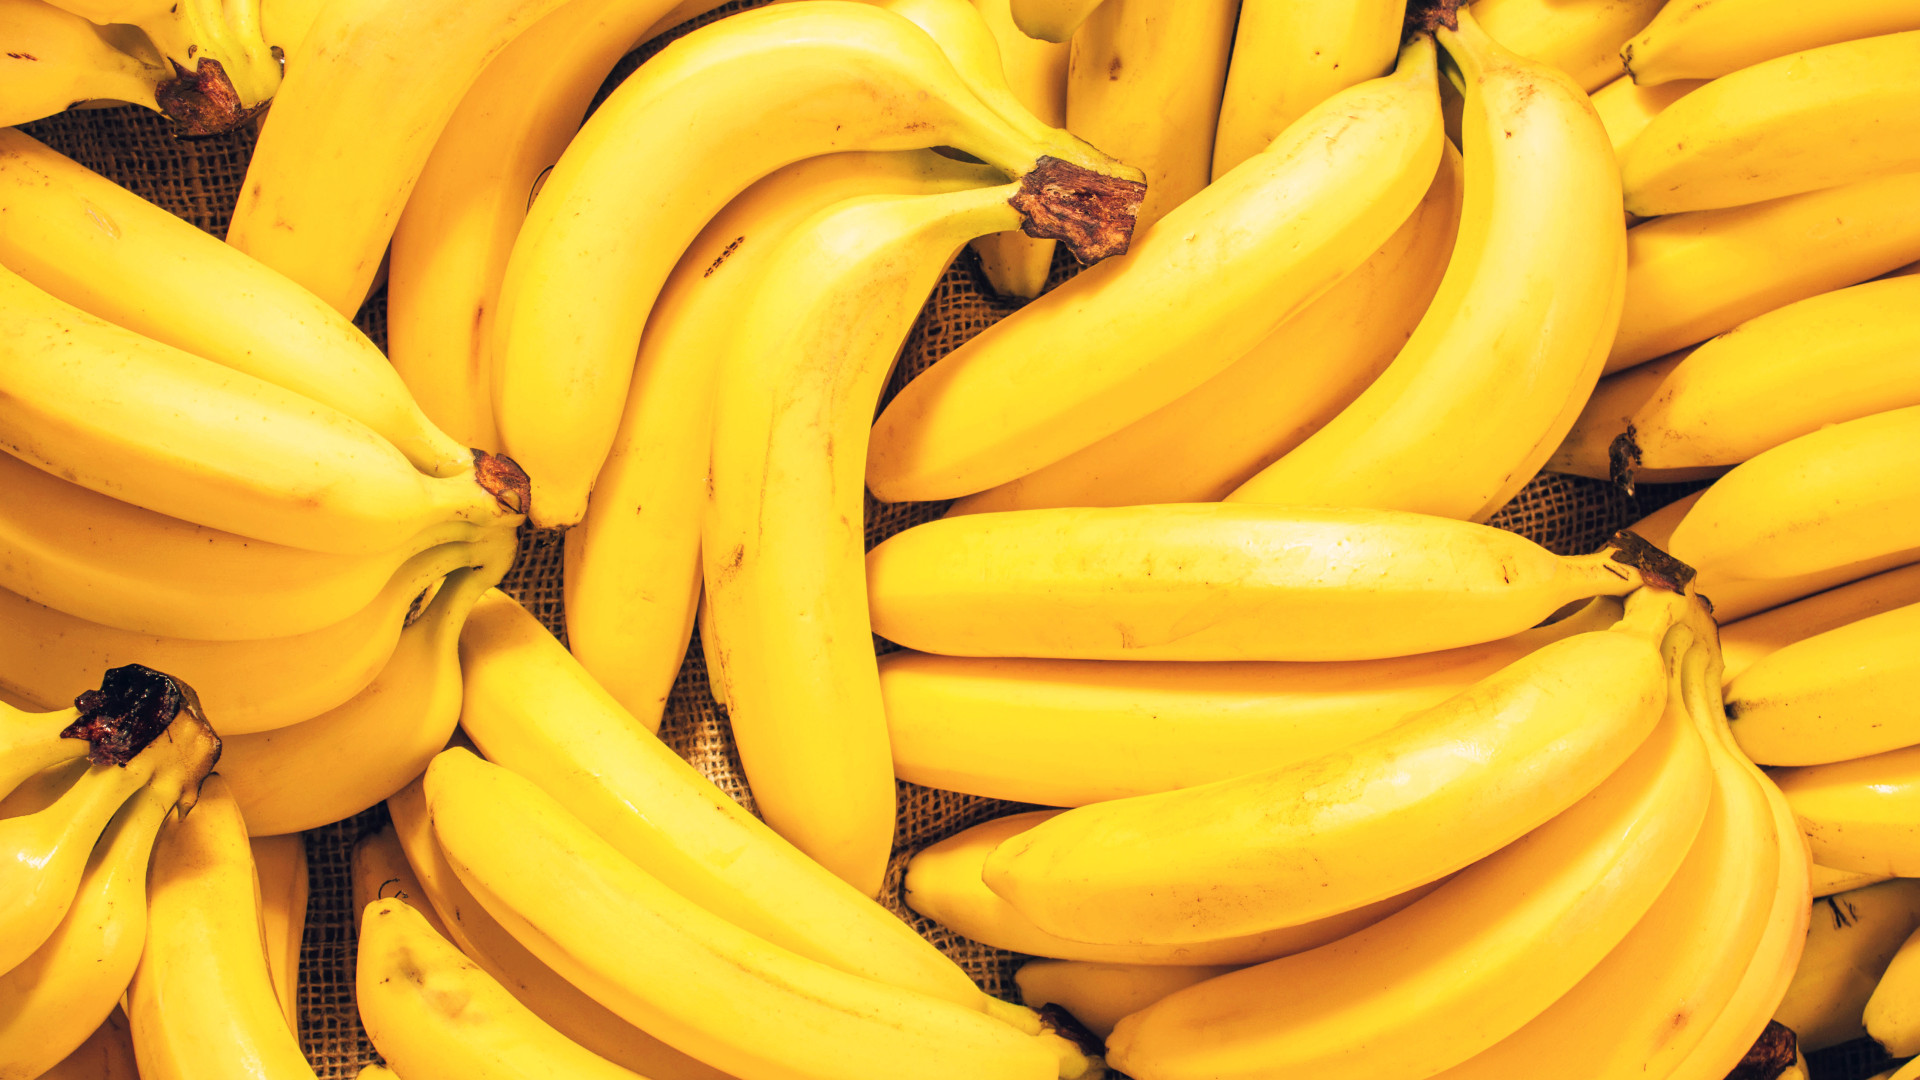  Soñar con plátano maduro: ¿qué significado, simbolismo y espiritualidad tiene?